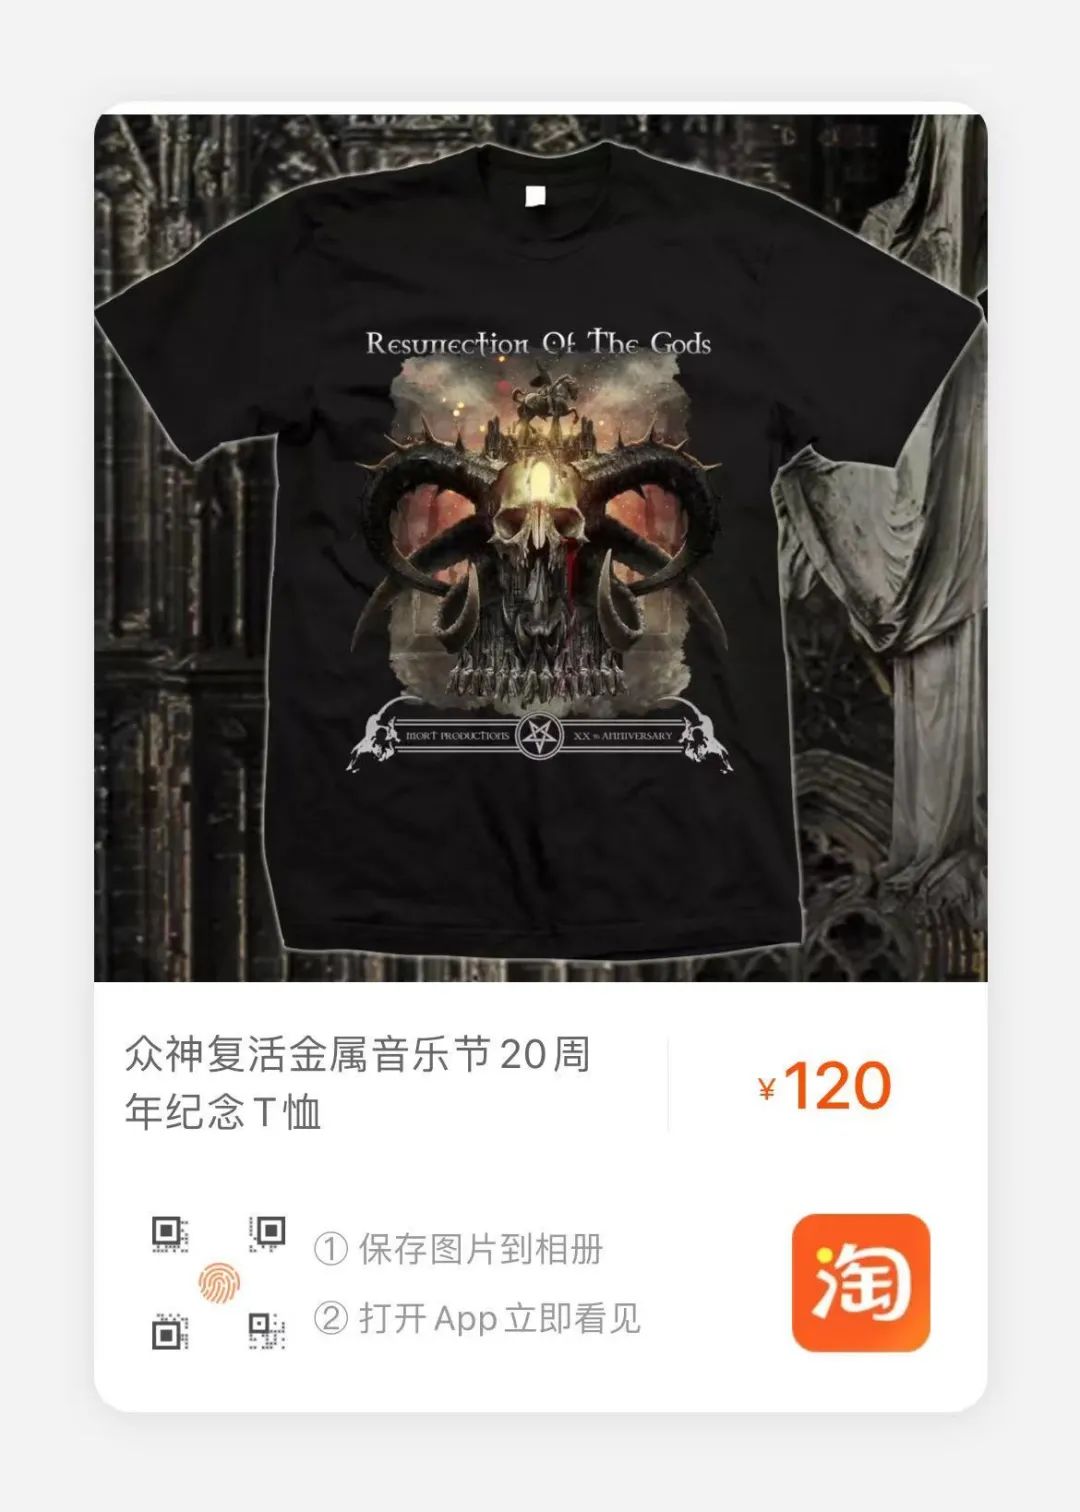 【赠票】2021南京众神复活金属音乐节已开票，买预售票送CD！